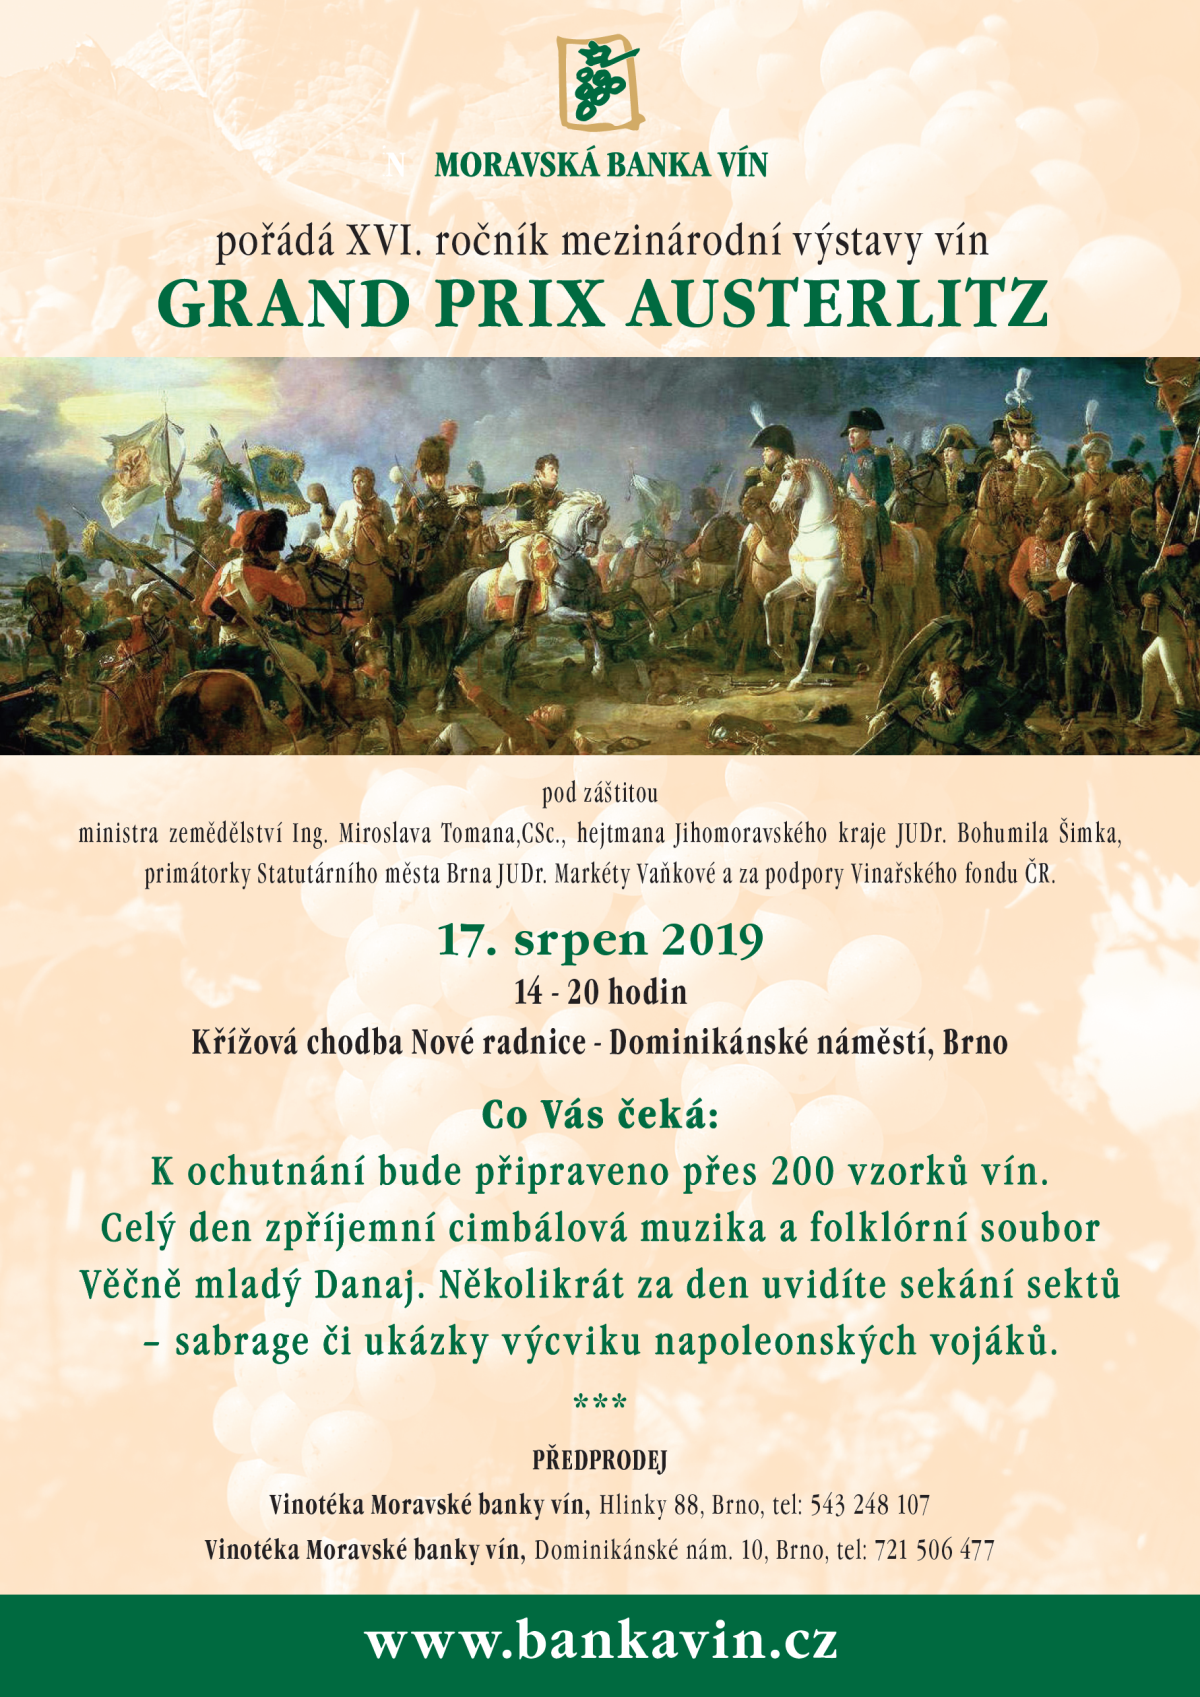 Grand Prix Auszterlitz 2019 (17.8.2019)